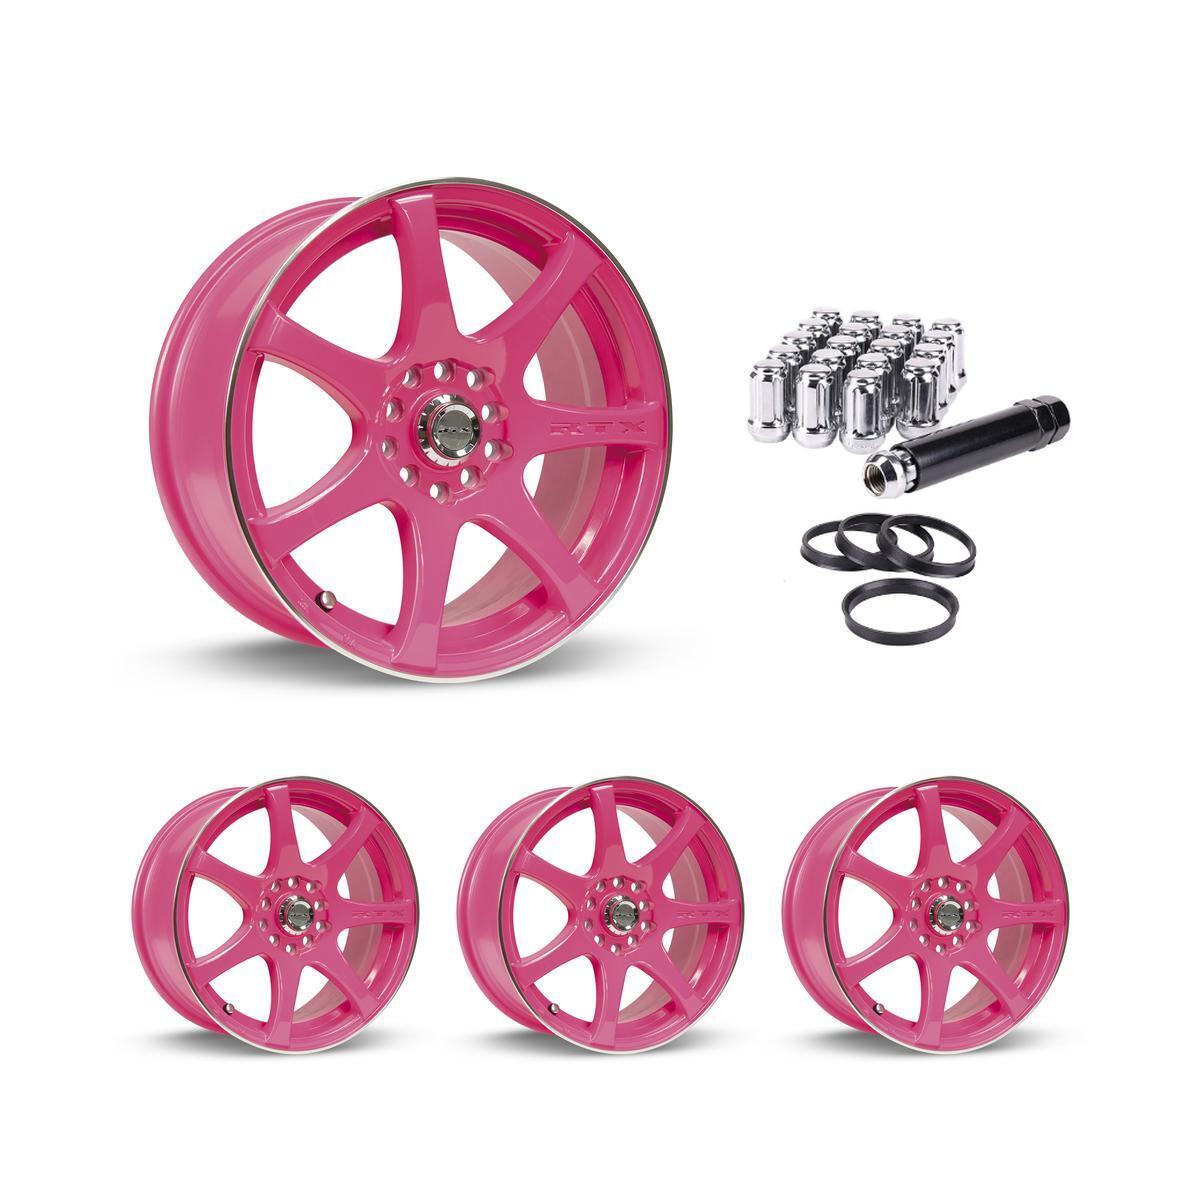 Wheel Rims Set with Chrome Lug Nuts Kit for 00-01 Kia Sephia P814049 15 inch